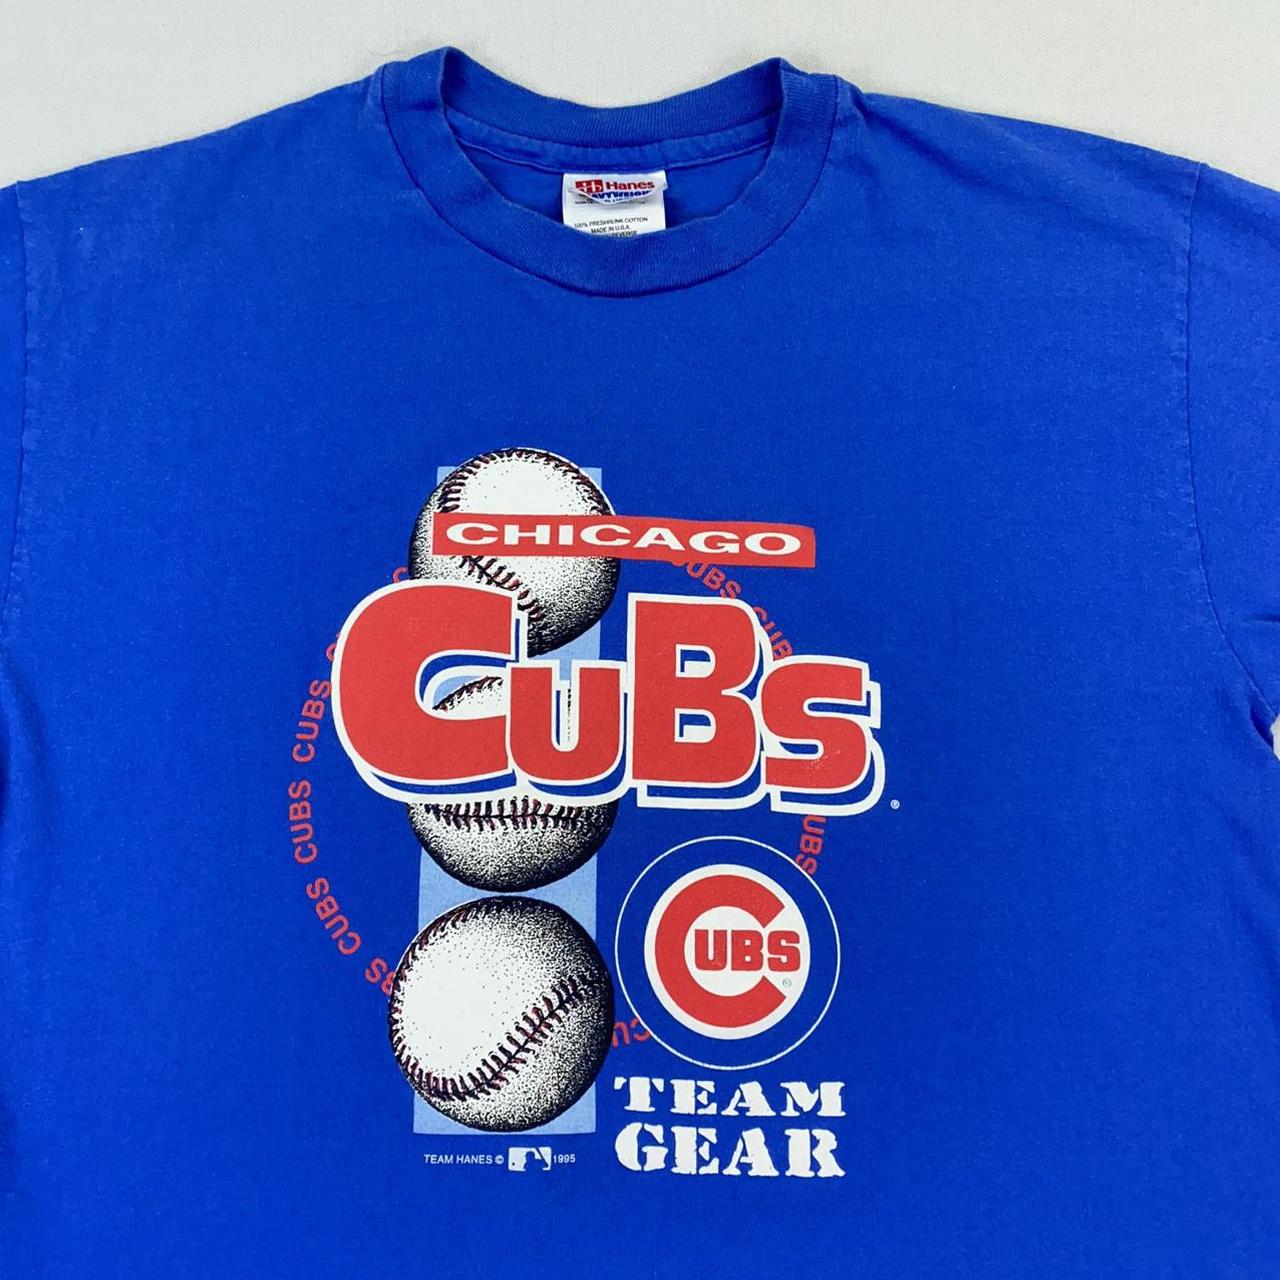 1995 Chicago Cubs Shirt. Great little vintage - Depop